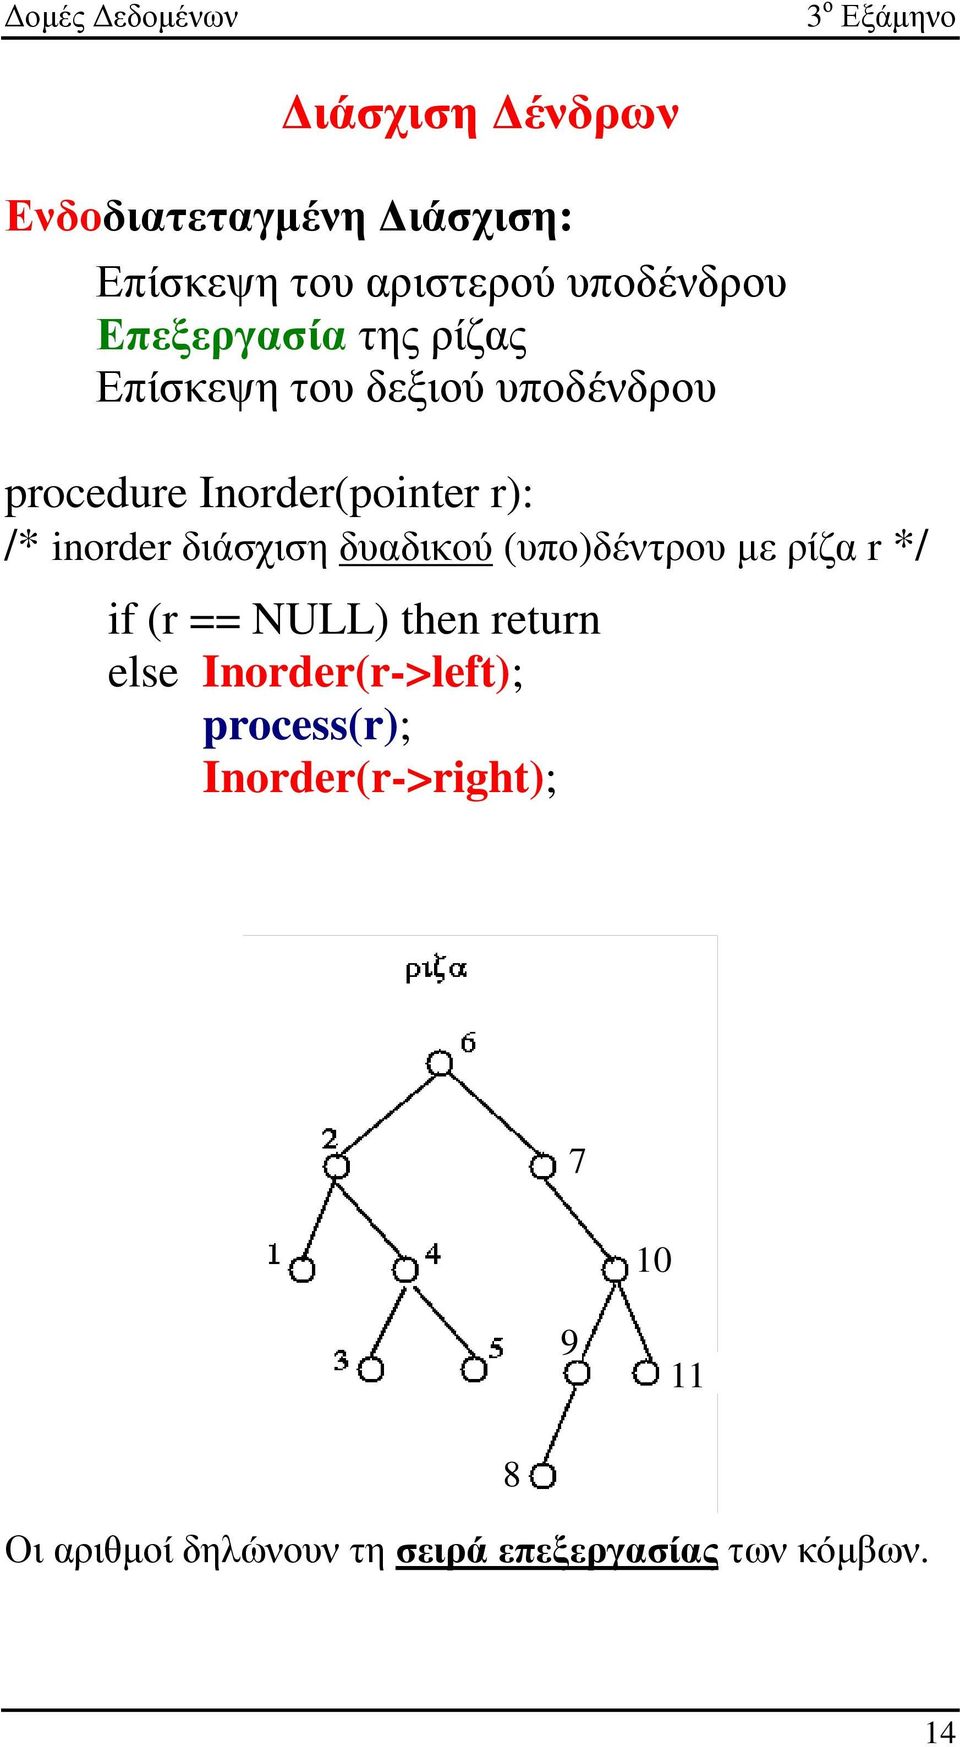 δυαδικού (υπο)δέντρου µε ρίζα r */ if (r == NULL) then return else Inorder(r->left);